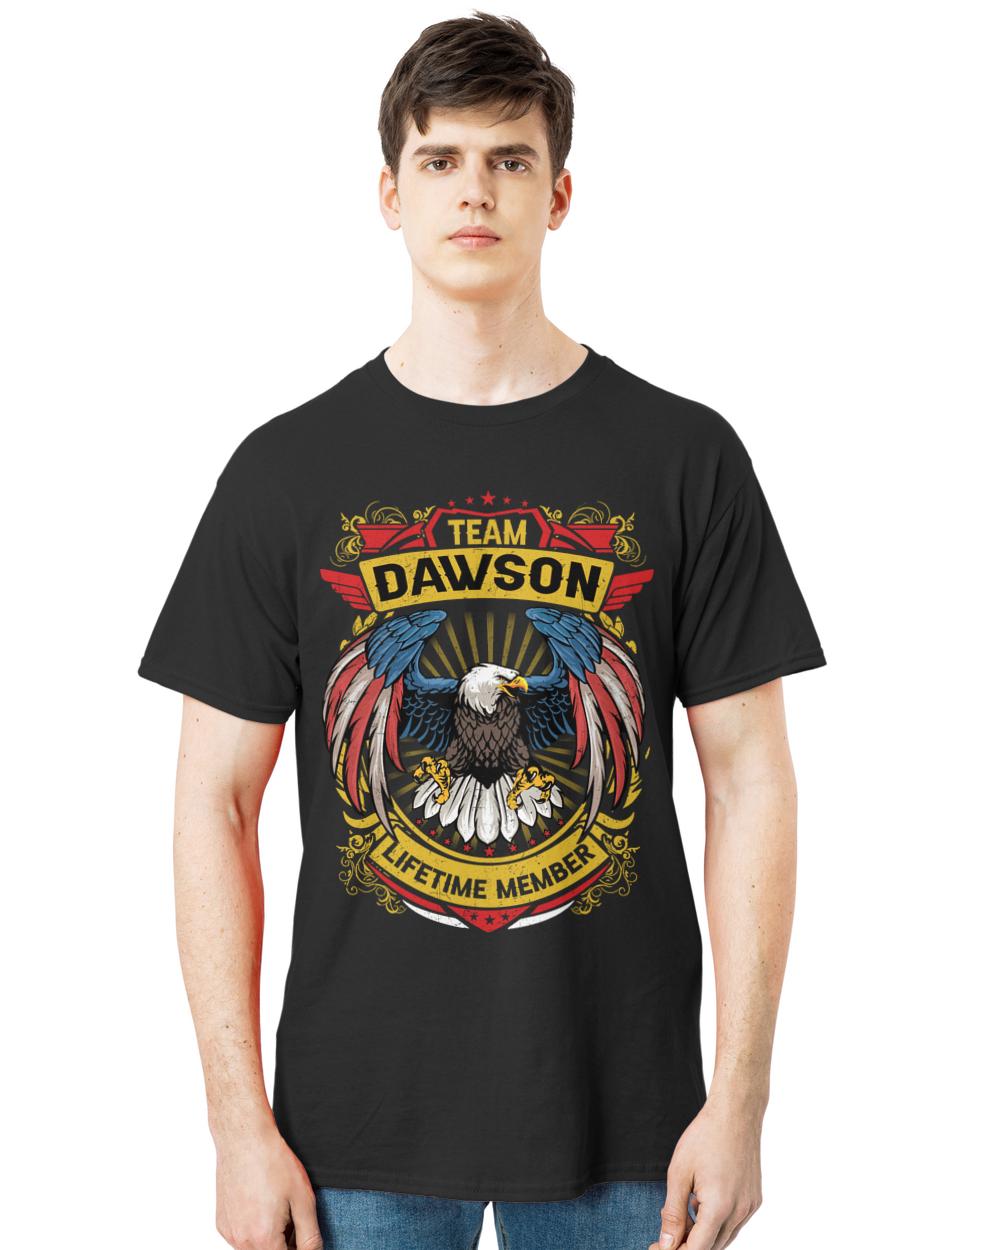 DAWSON-13K-N3-01